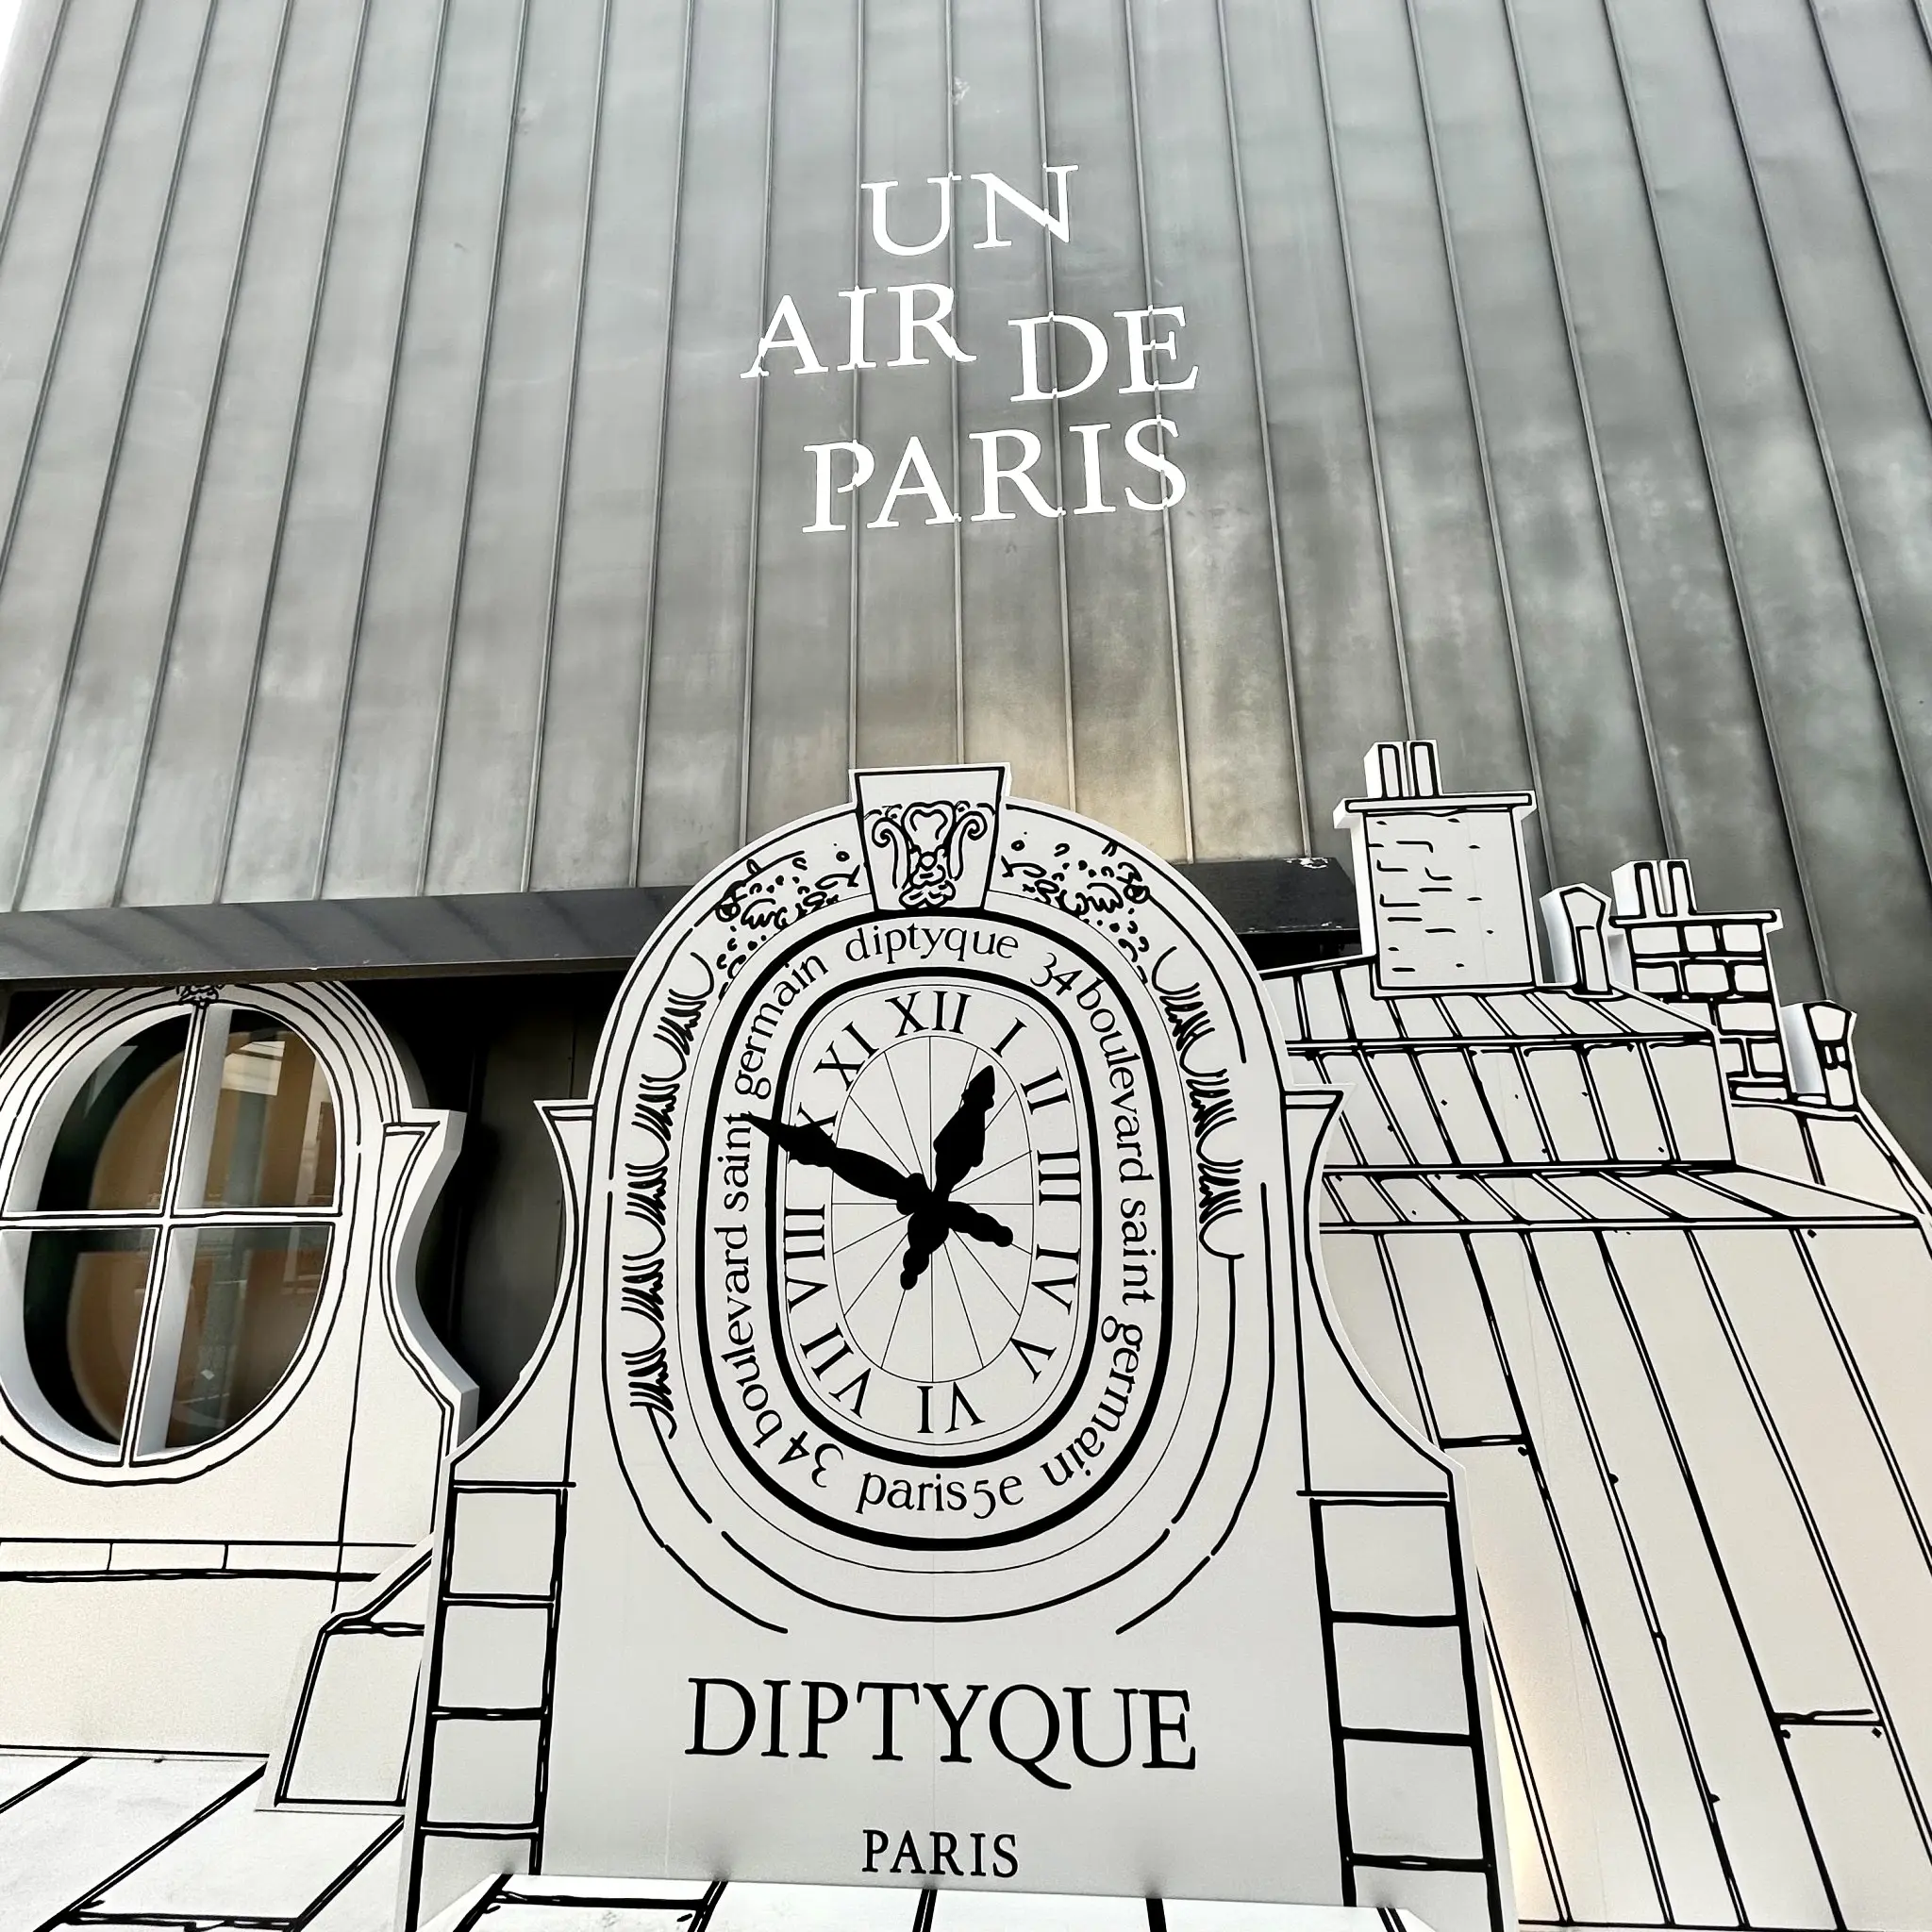 DIPTYQUE】 POP UP EVENT 『UN AIR DE PARIS（パリの空気）』に行って